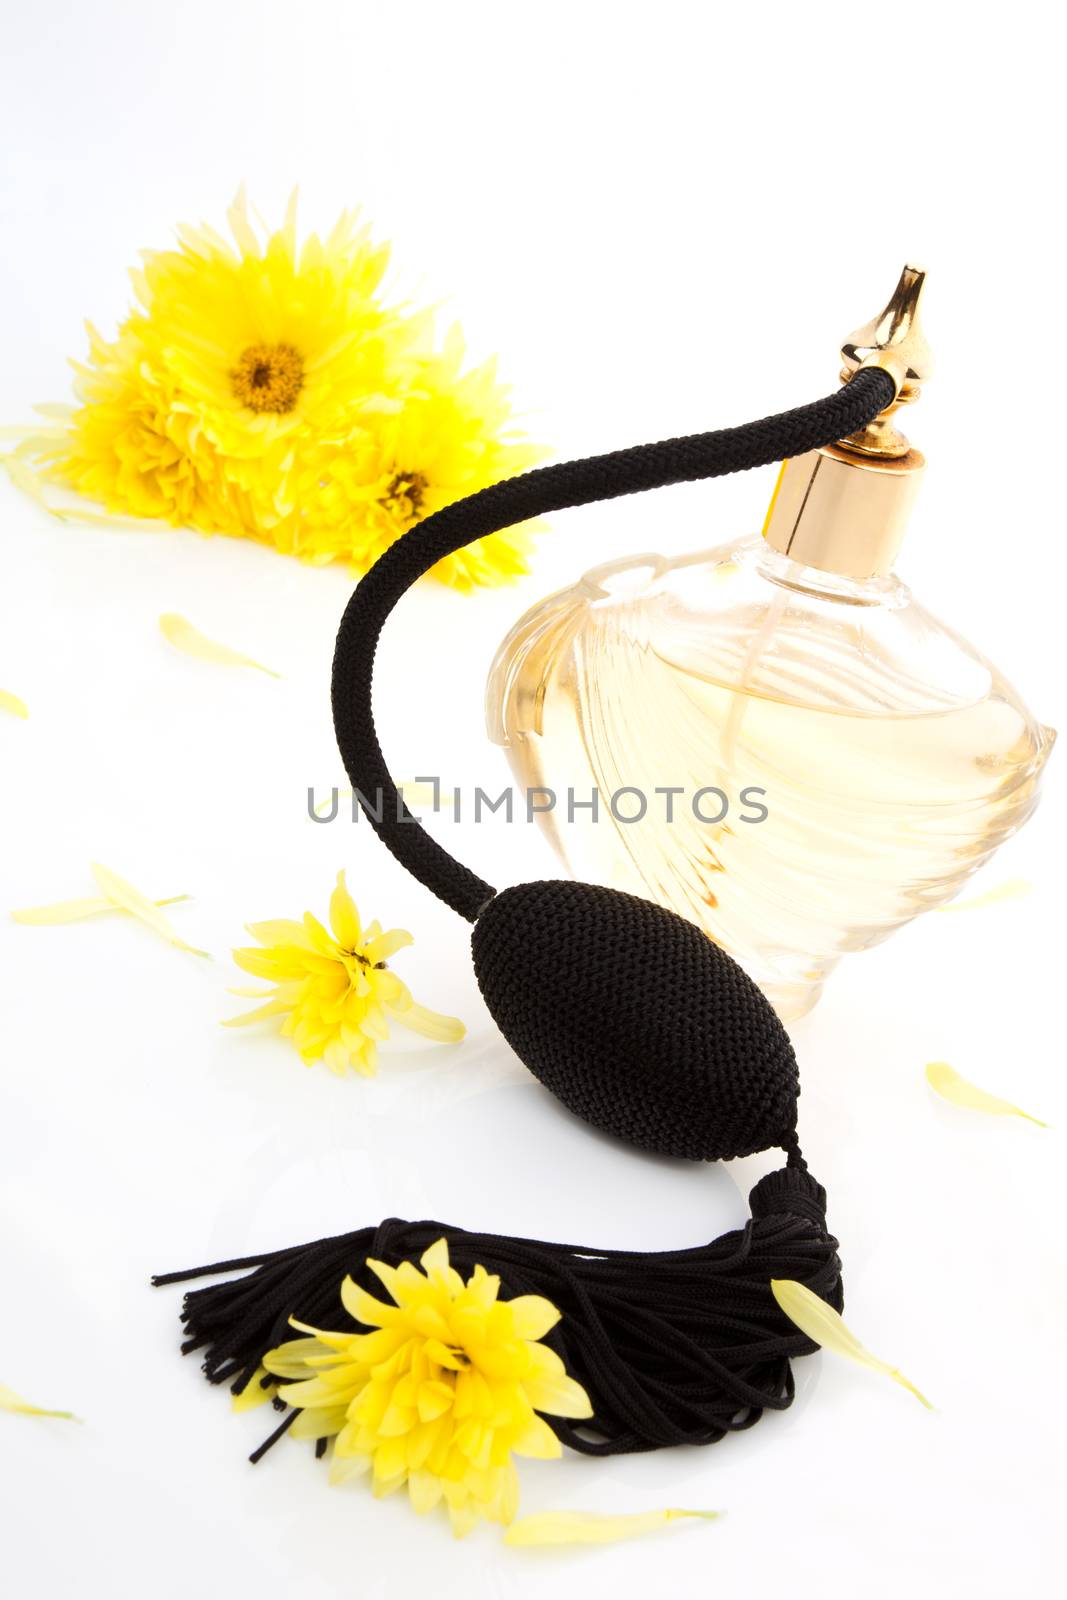 Perfume bottle. by eskymaks